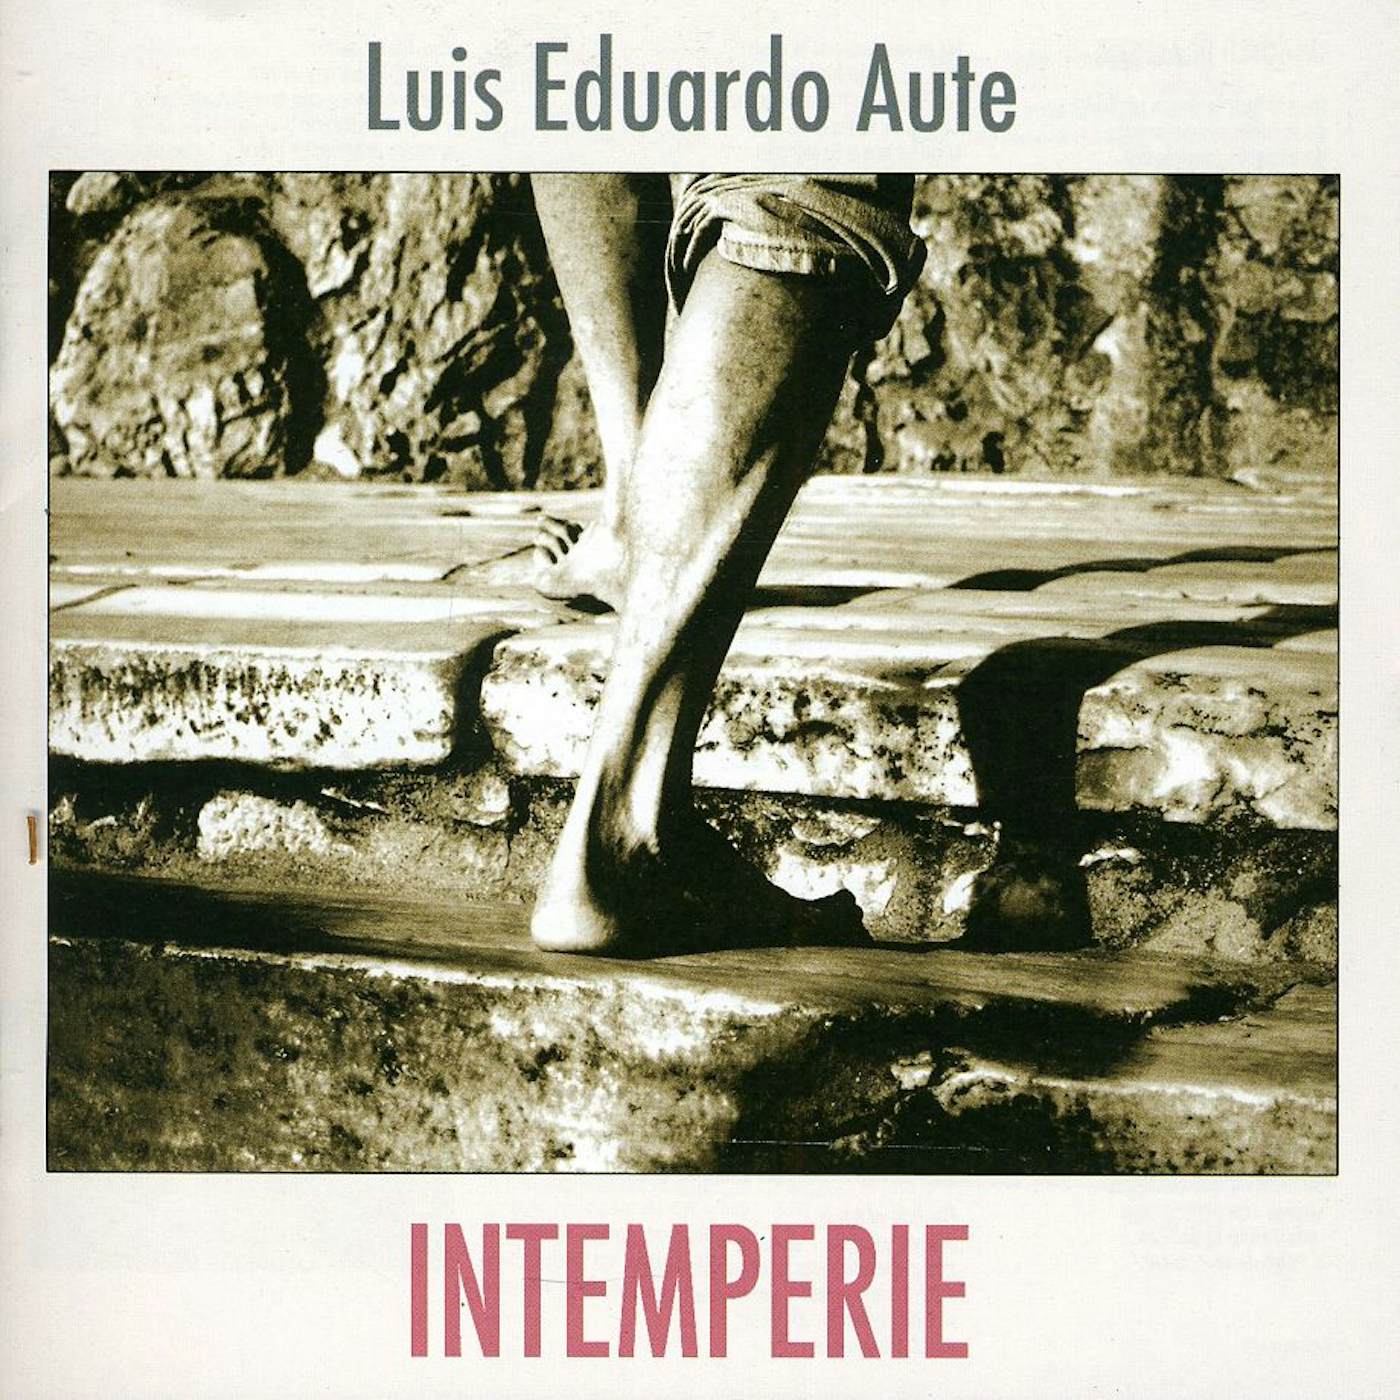 Luis Eduardo Aute INTEMPERIE CD